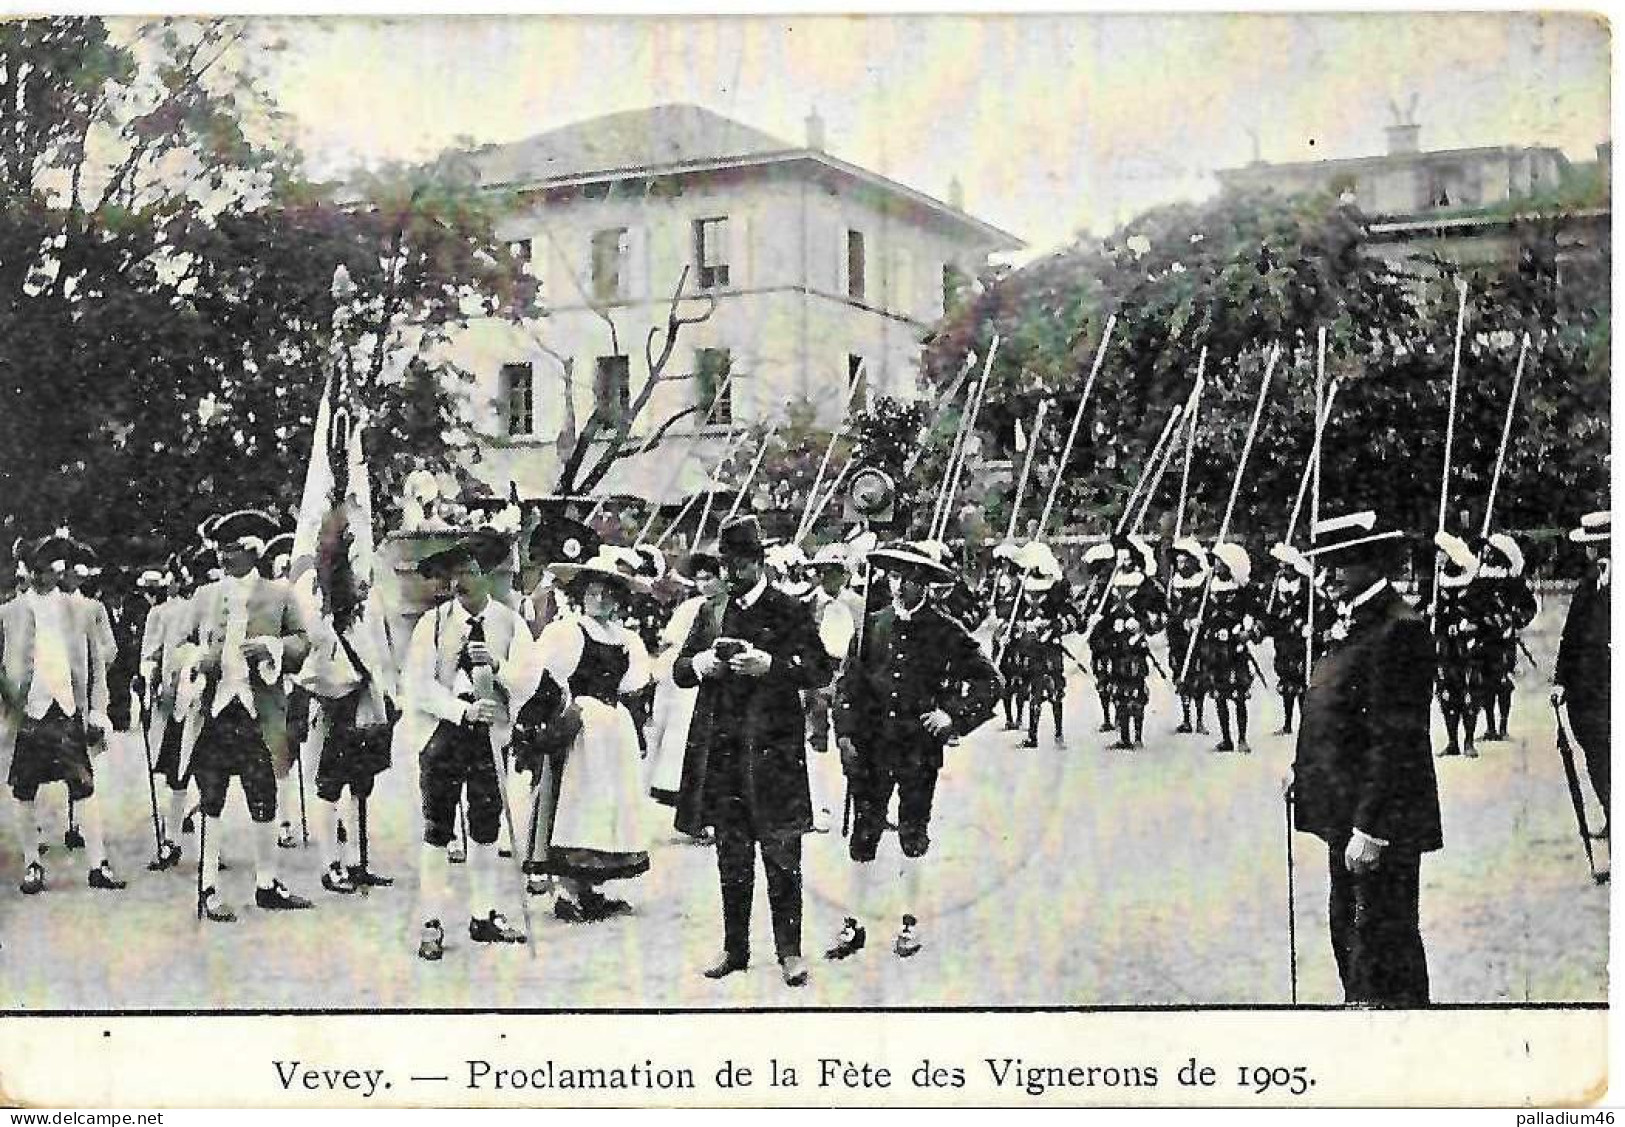 VD VEVEY PROCLAMATION DE LA FÊTE DES VIGNERONS DE 1905 - Circulé 10.06.1905 Vers Dresden Allemagne - Vevey